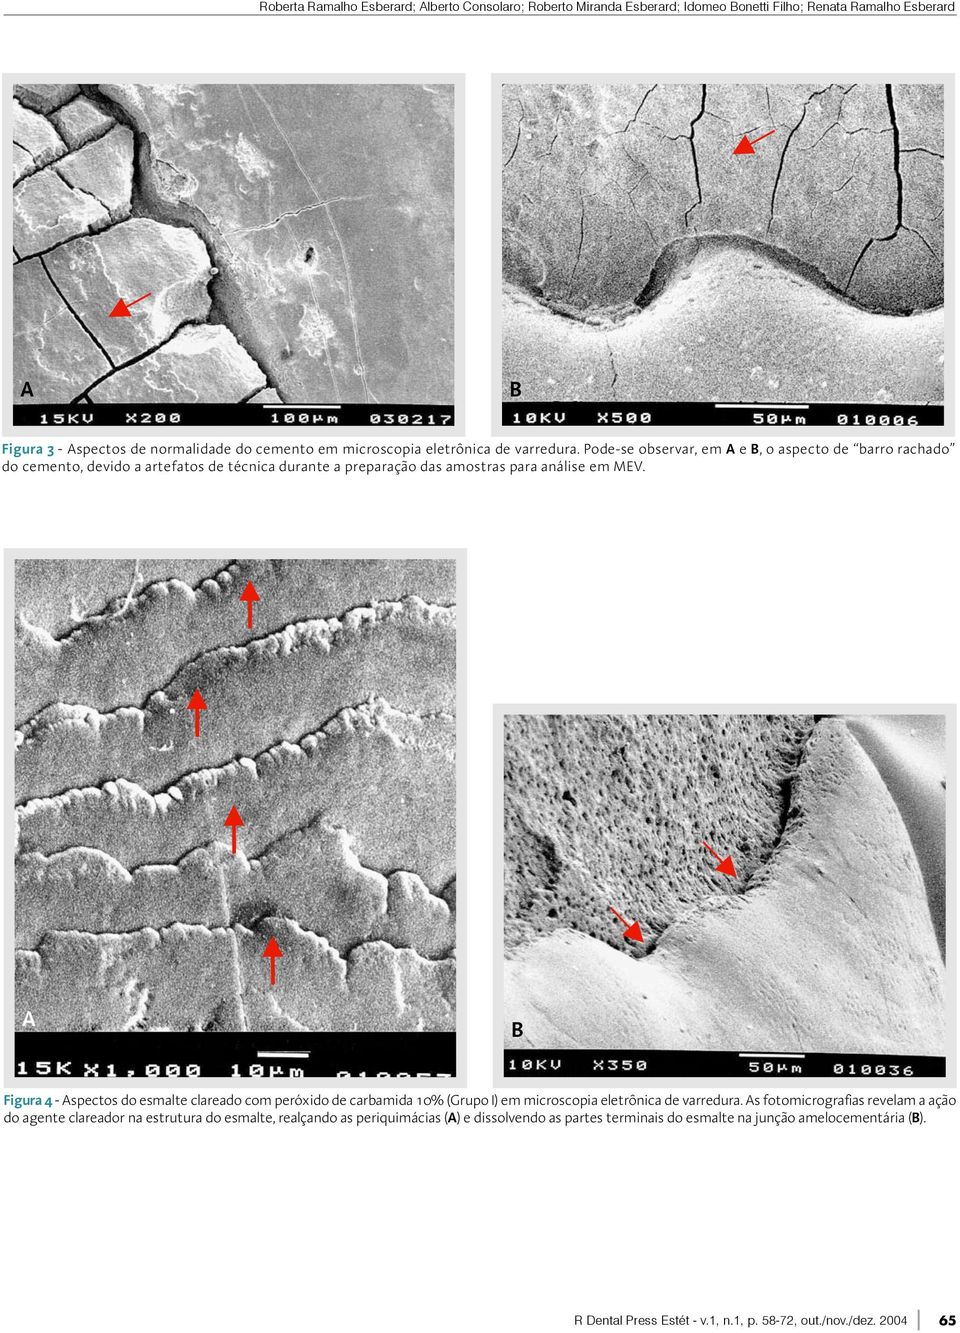 A B Figura 4 - Aspectos do esmalte clareado com peróxido de carbamida 10% (Grupo I) em microscopia eletrônica de varredura.